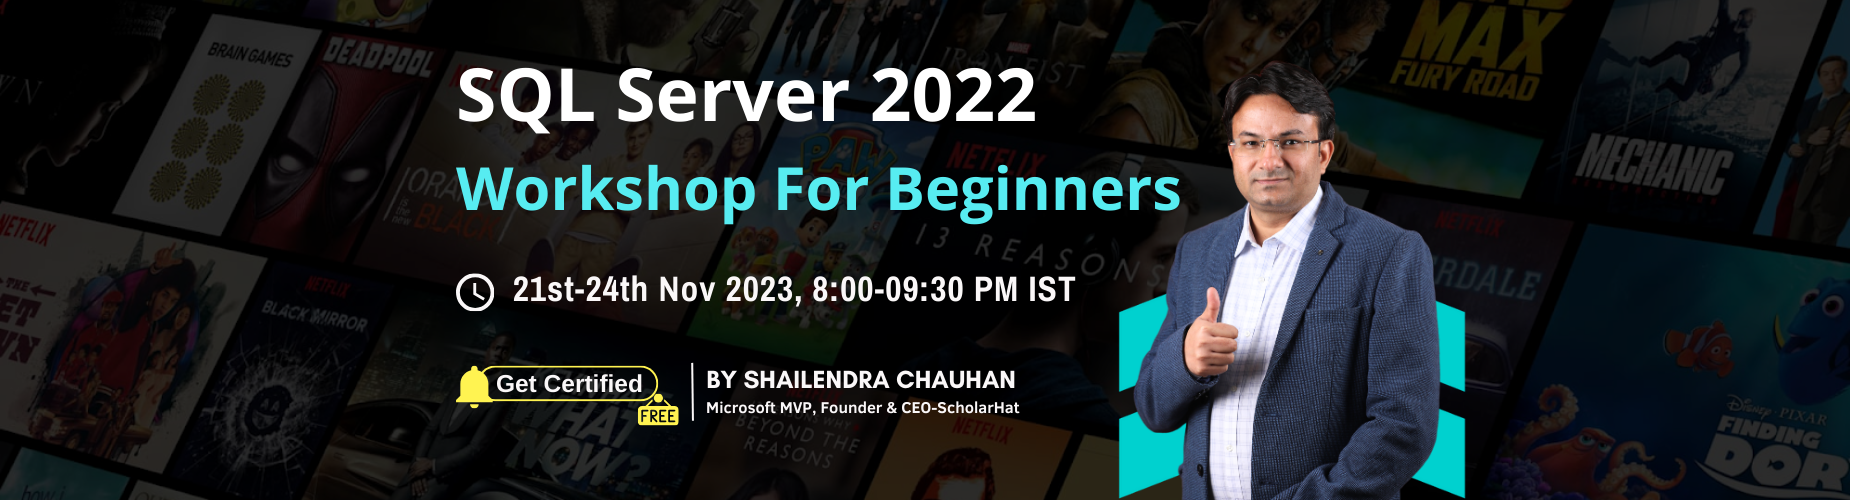 SQL Server 2022 Workshop for Beginners